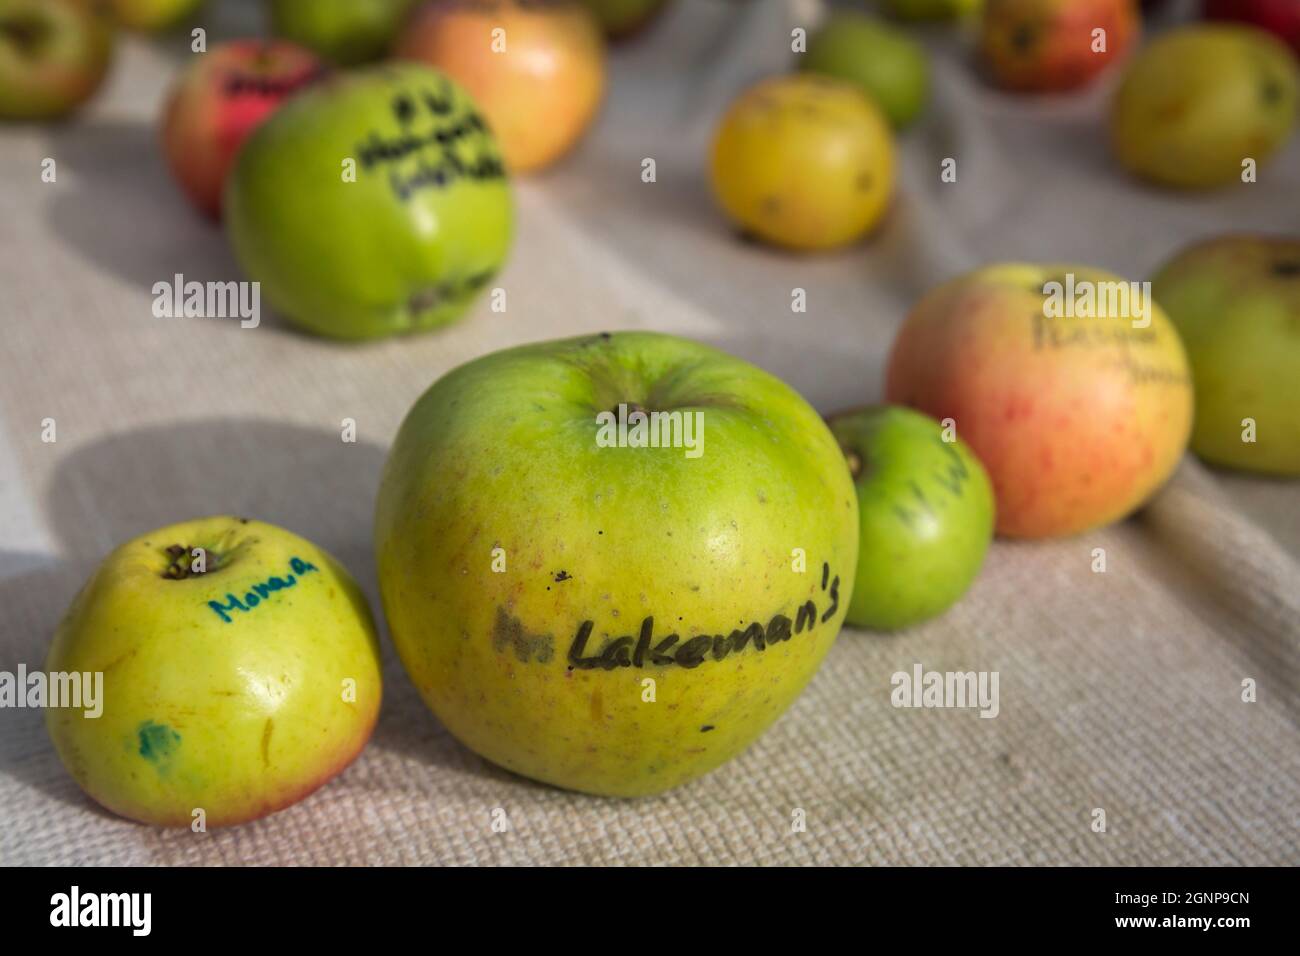 La varietà locale di mele della sig.ra Lakeman, esposta sul mercato in occasione dell'Apple Day, Hexham Farmers' Market, Northumberland, Regno Unito, Foto Stock